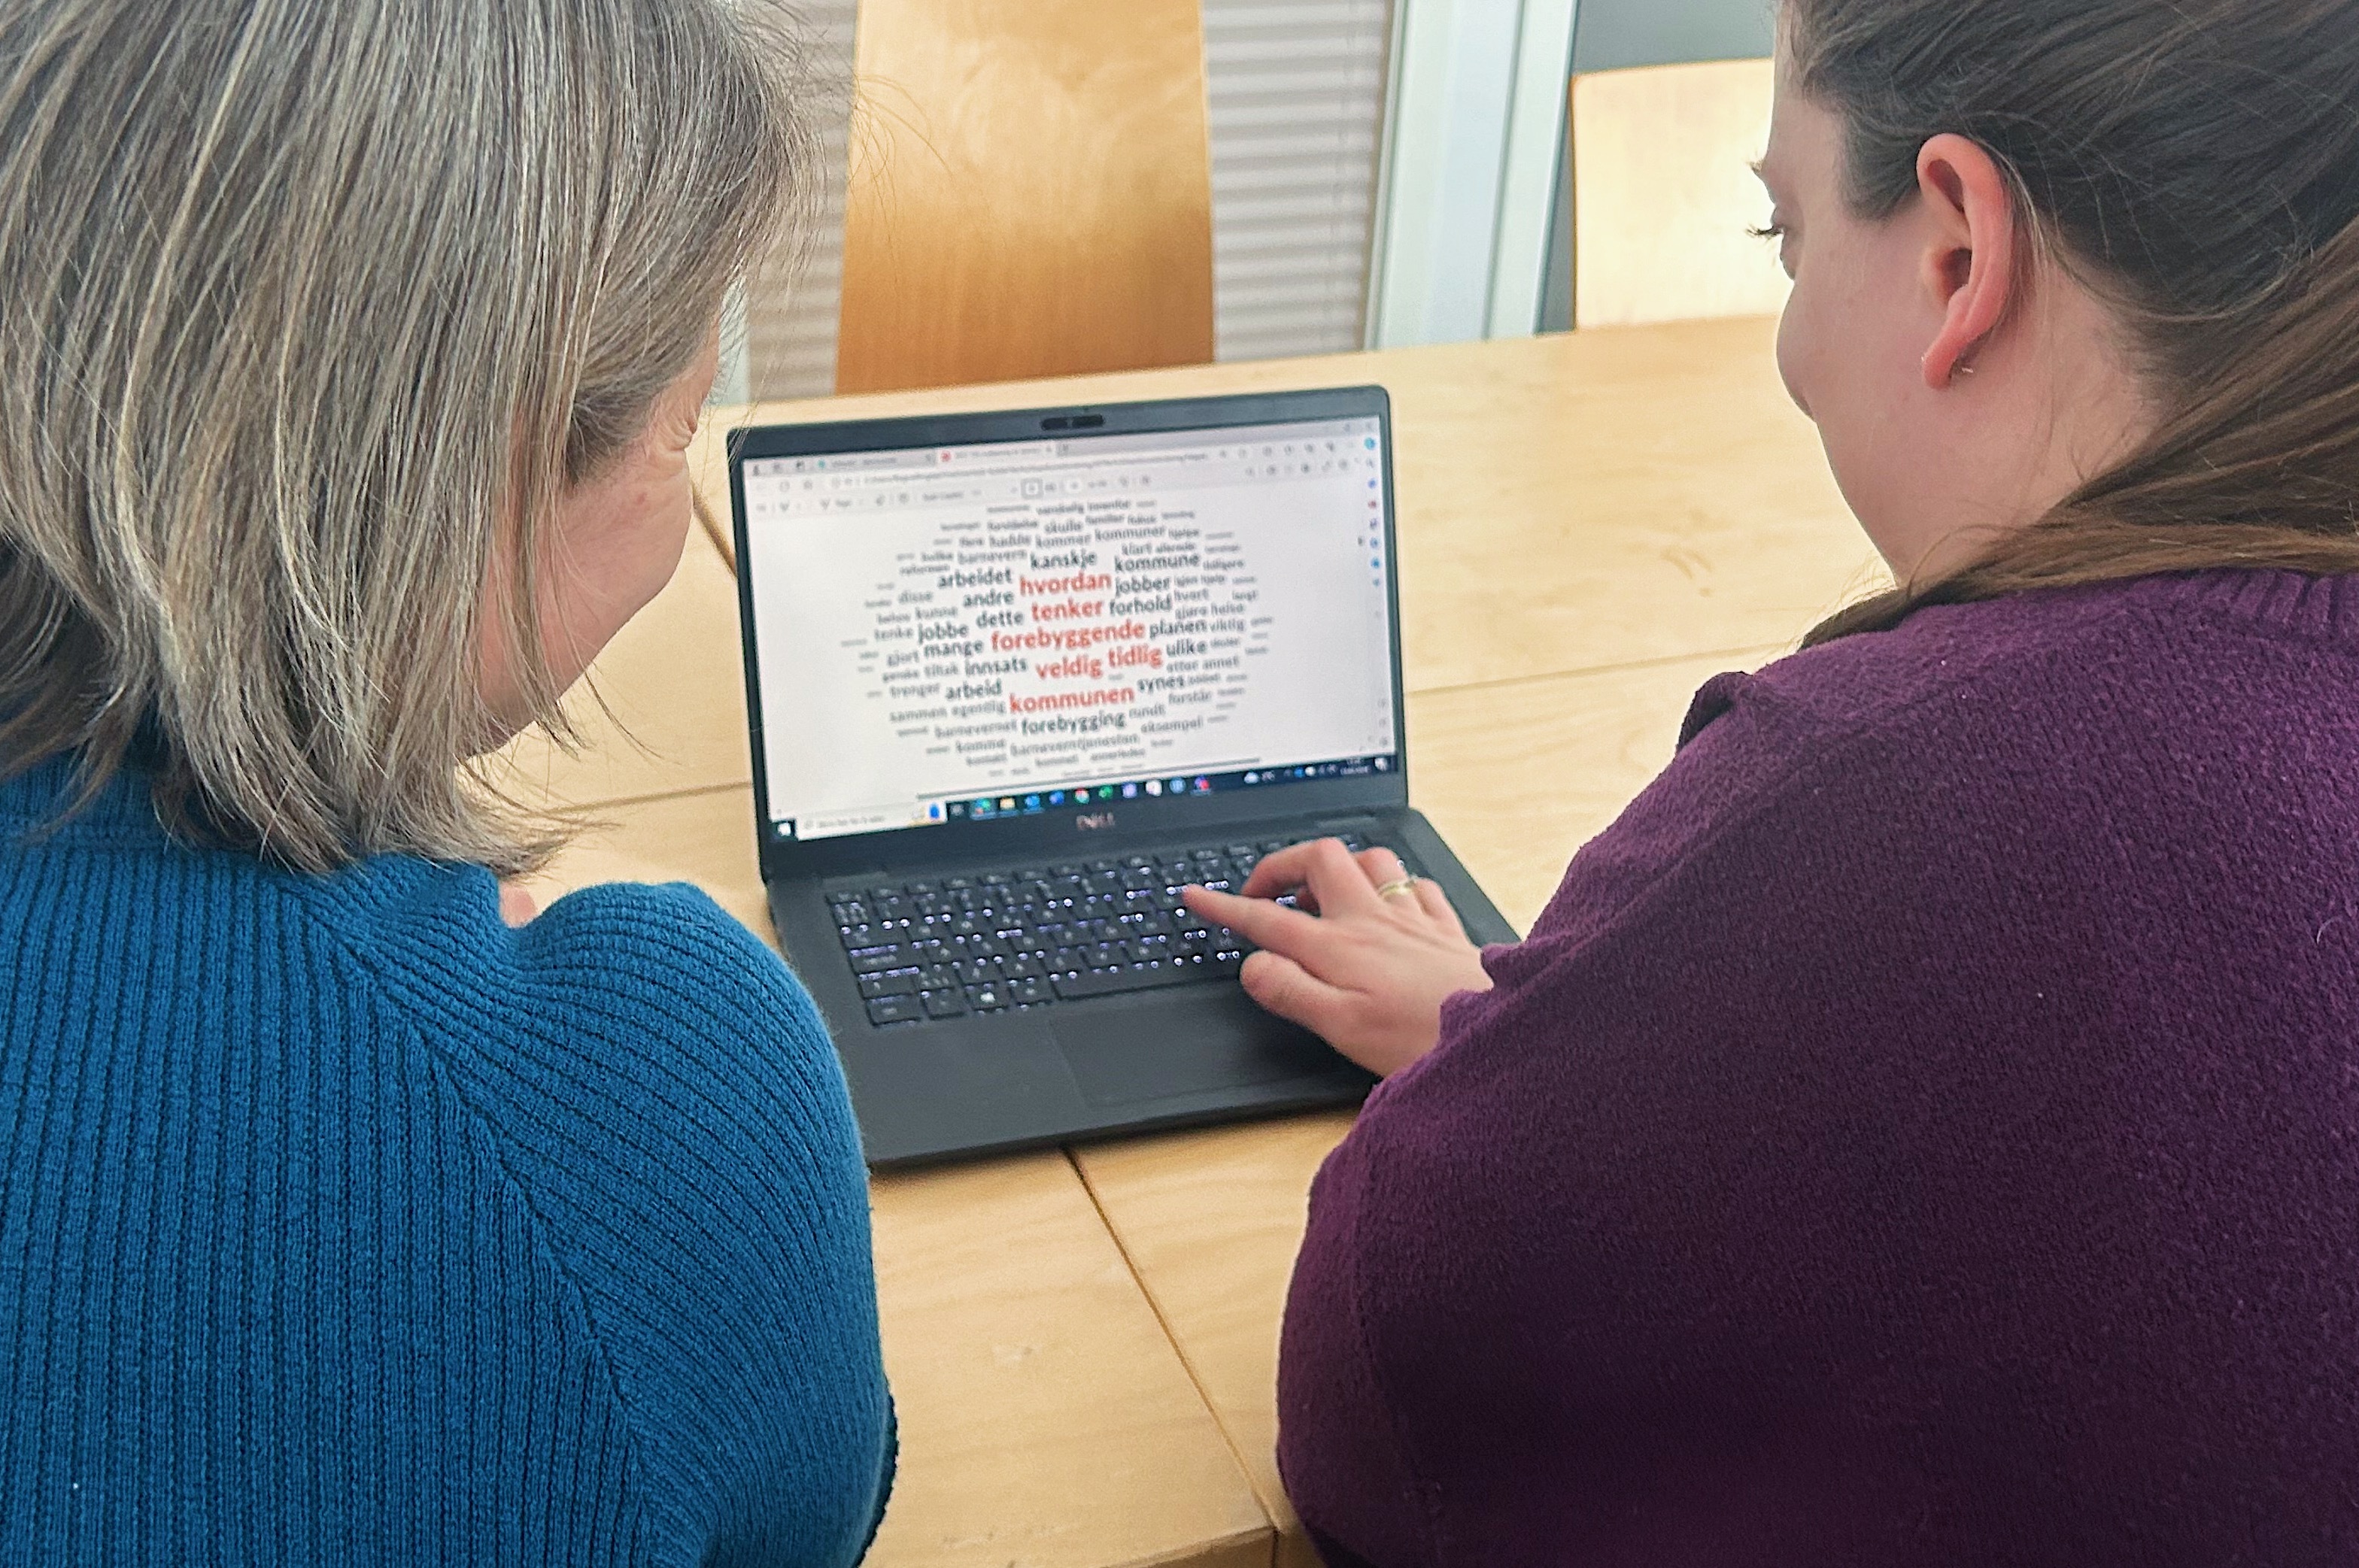 Lena Westby og Regine Ringdal sitter foran en PC som viser en ordsky. I ordskyen er ordene "Hvordan tenker forbyggende veldig tidlig kommunen" markert i rødt. Fotografi.